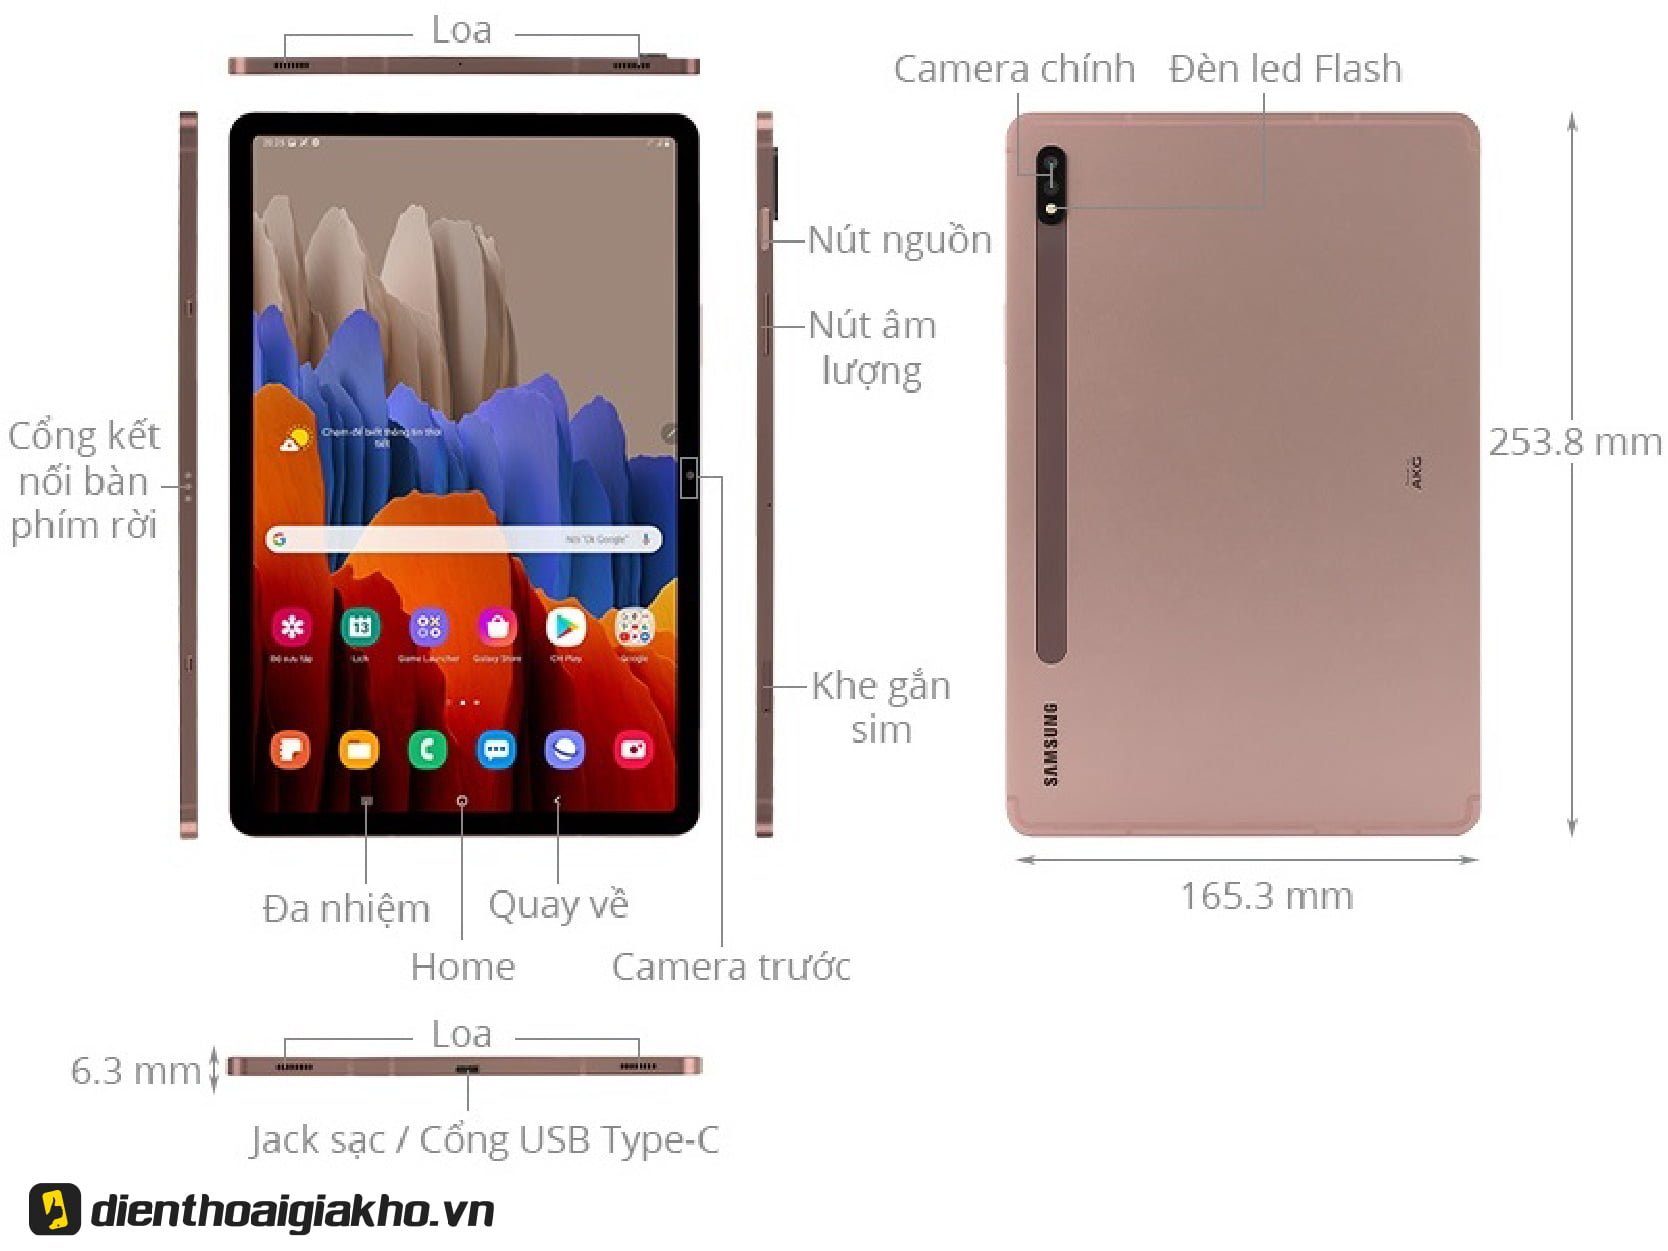 Những thông số đáng chú ý chứng minh đây là chiếc Tablet Android đáng mua nhất